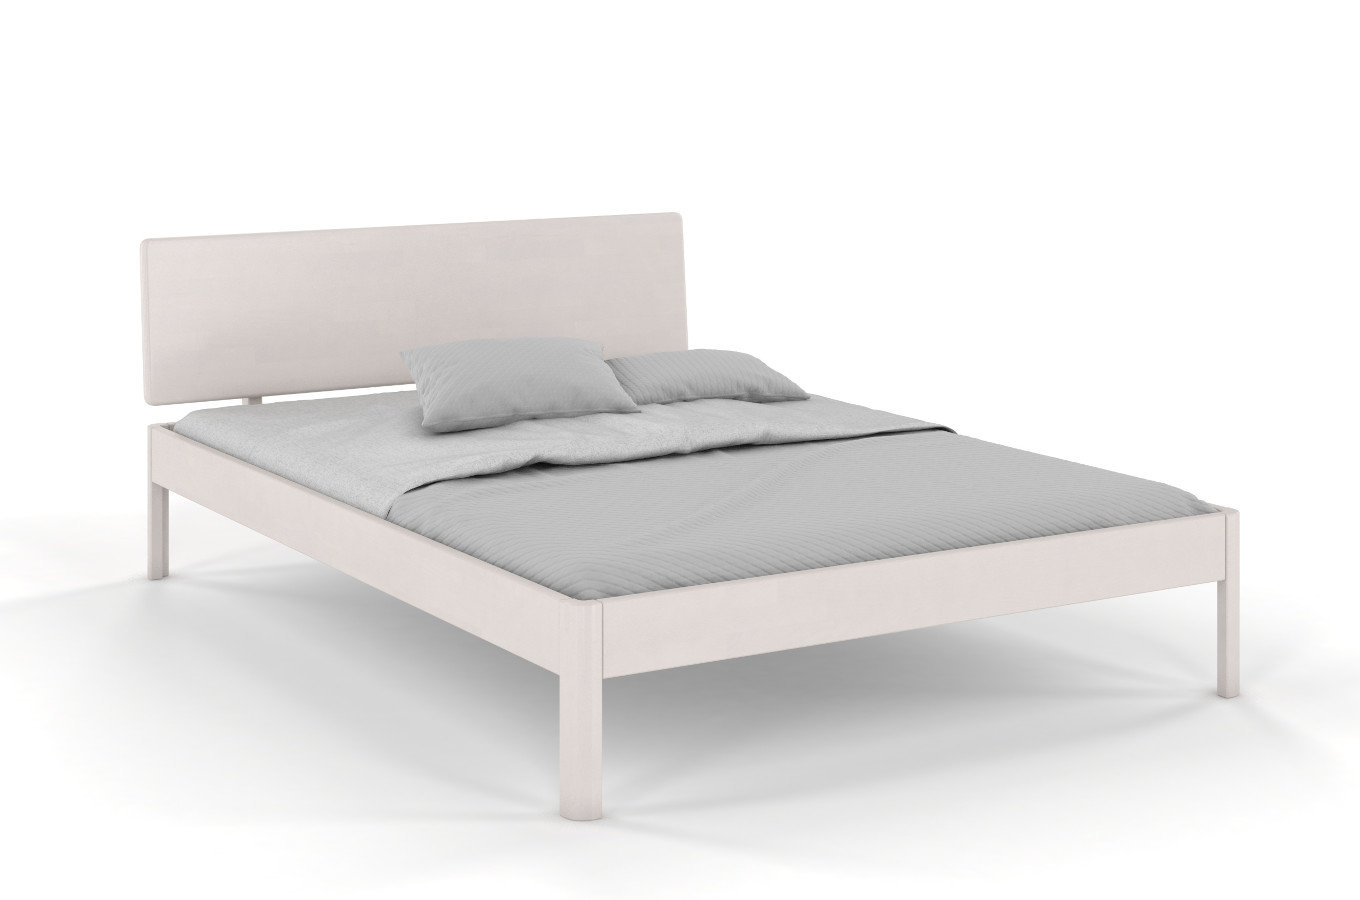  Łóżko drewniane bukowe Visby AMMER / 90x200 cm, kolor biały